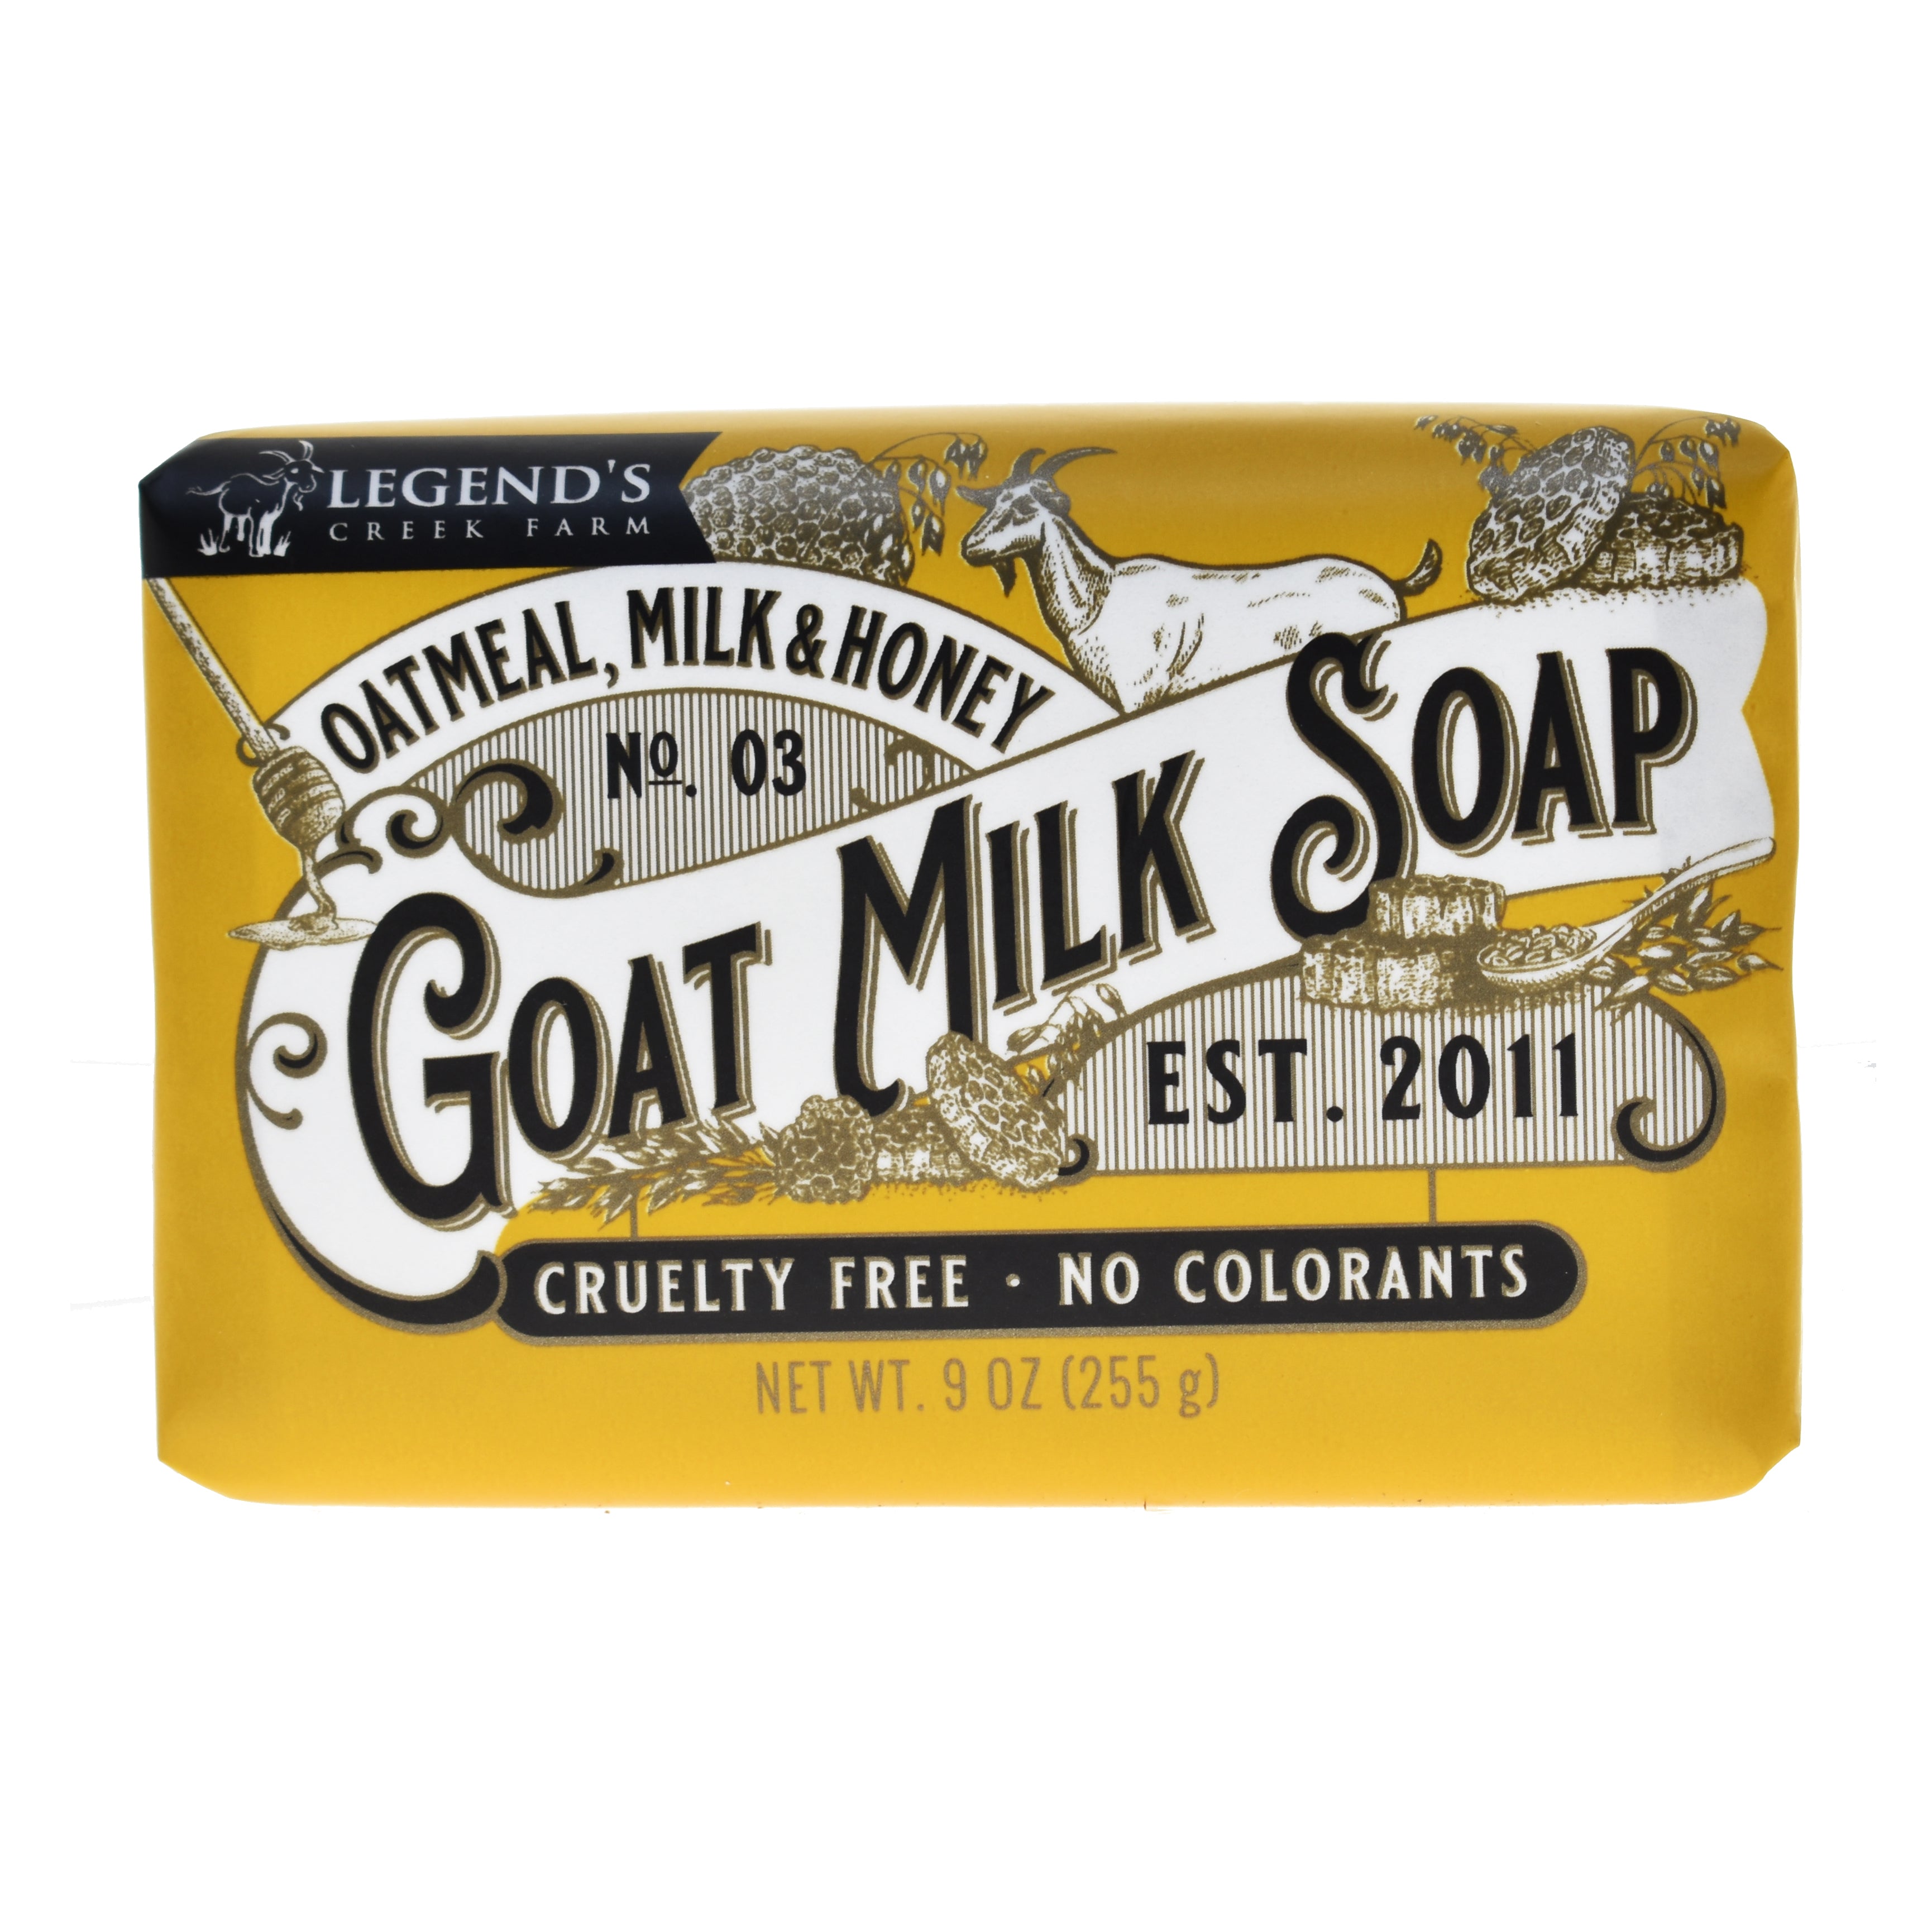 Honey + Oatmeal Goat's Milk Soap – The Galloway Farm